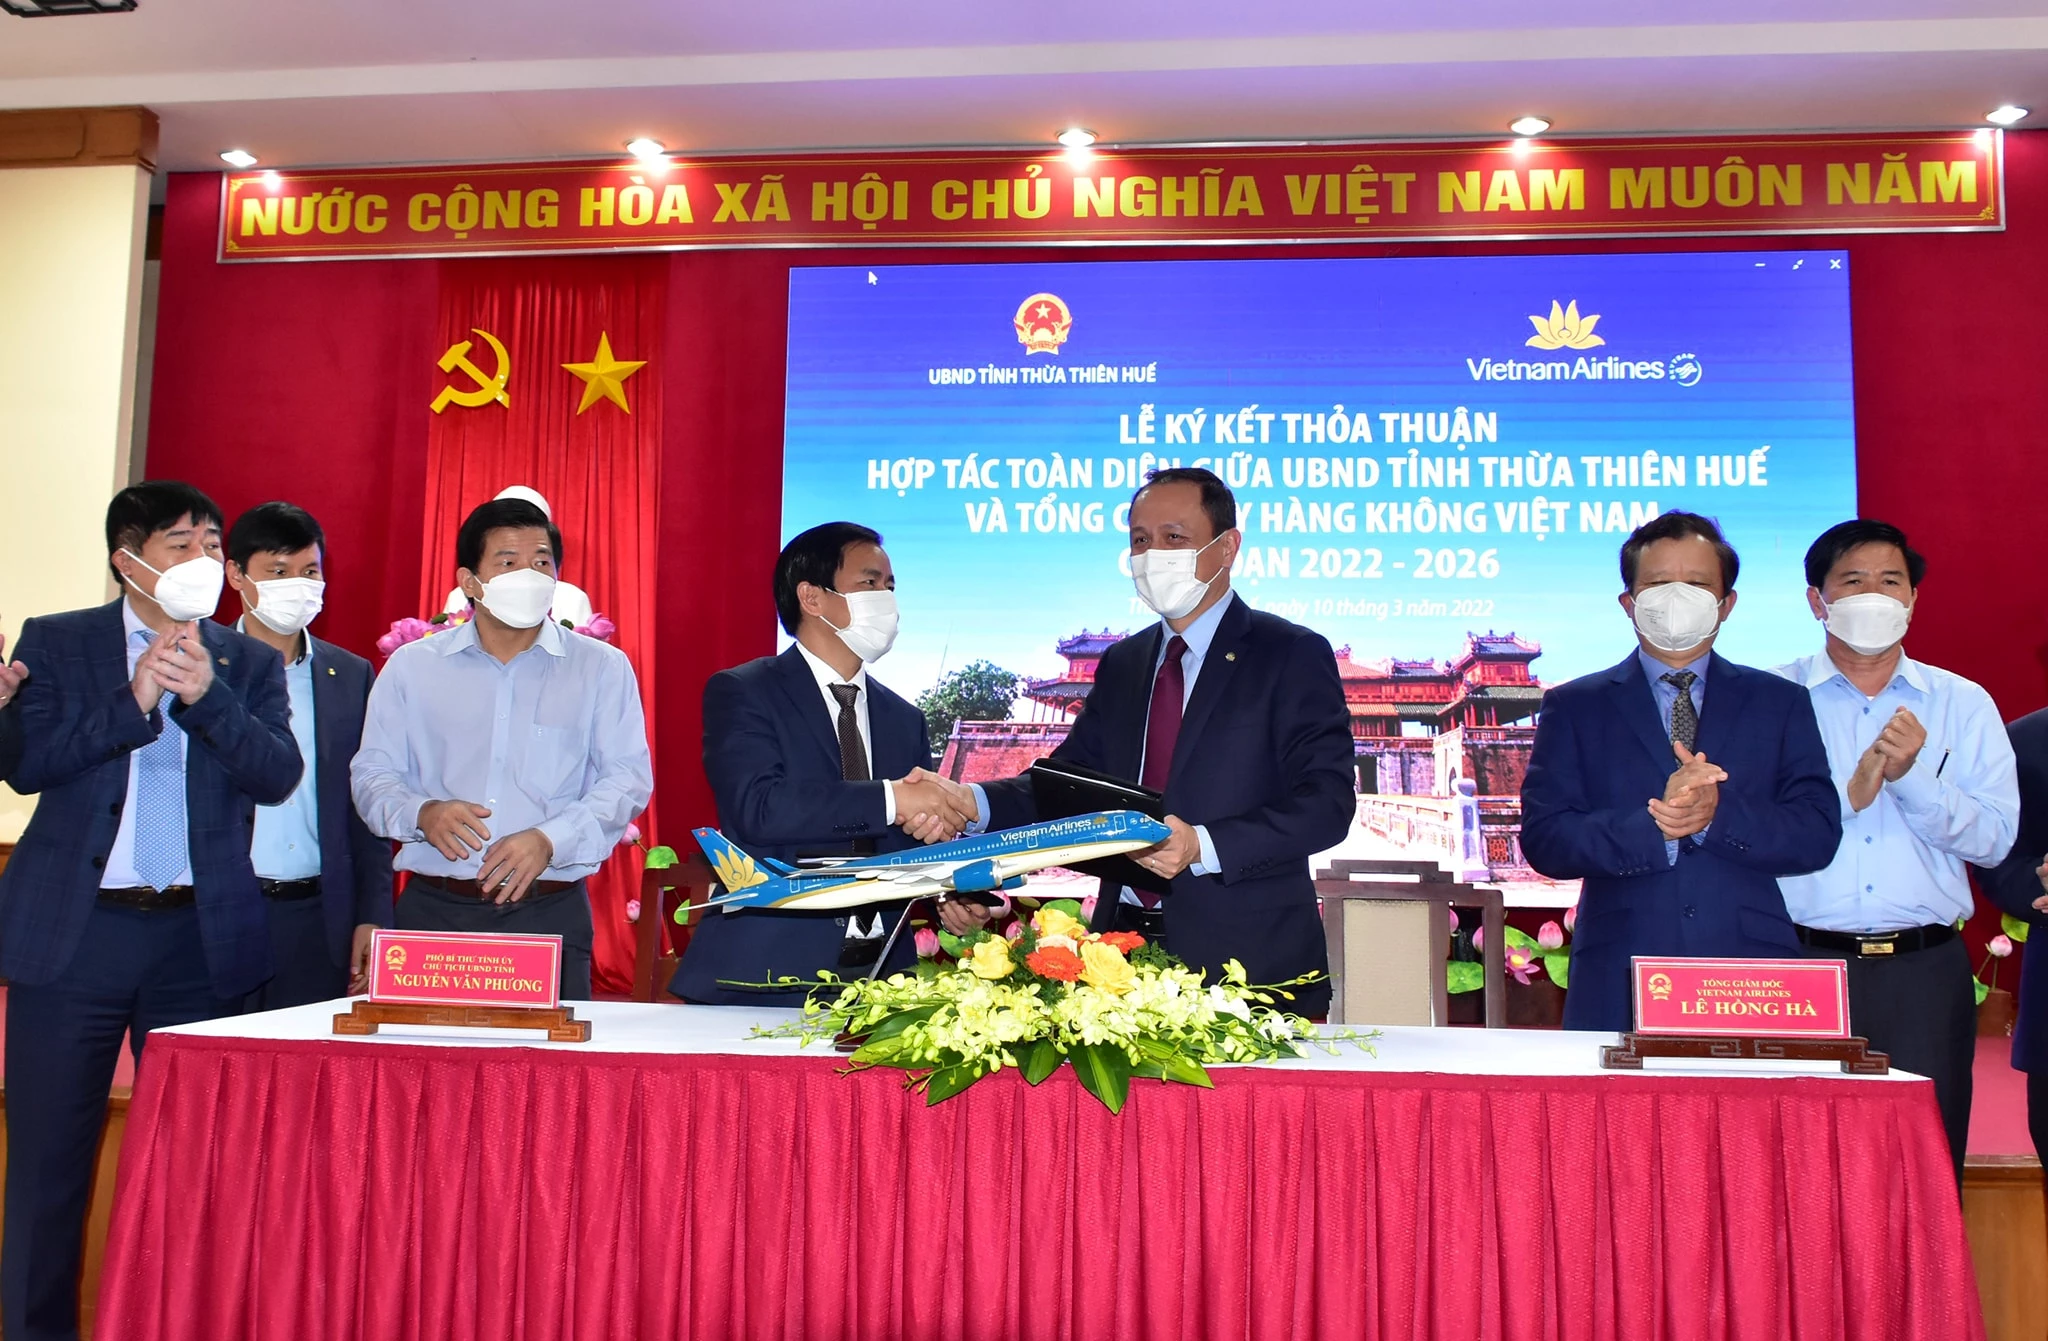 Chủ tịch UBND tỉnh Nguyễn Văn Phương và Tổng Giám đốc Tổng Công ty Hàng không Việt Nam ký kết biên bản thỏa thuận